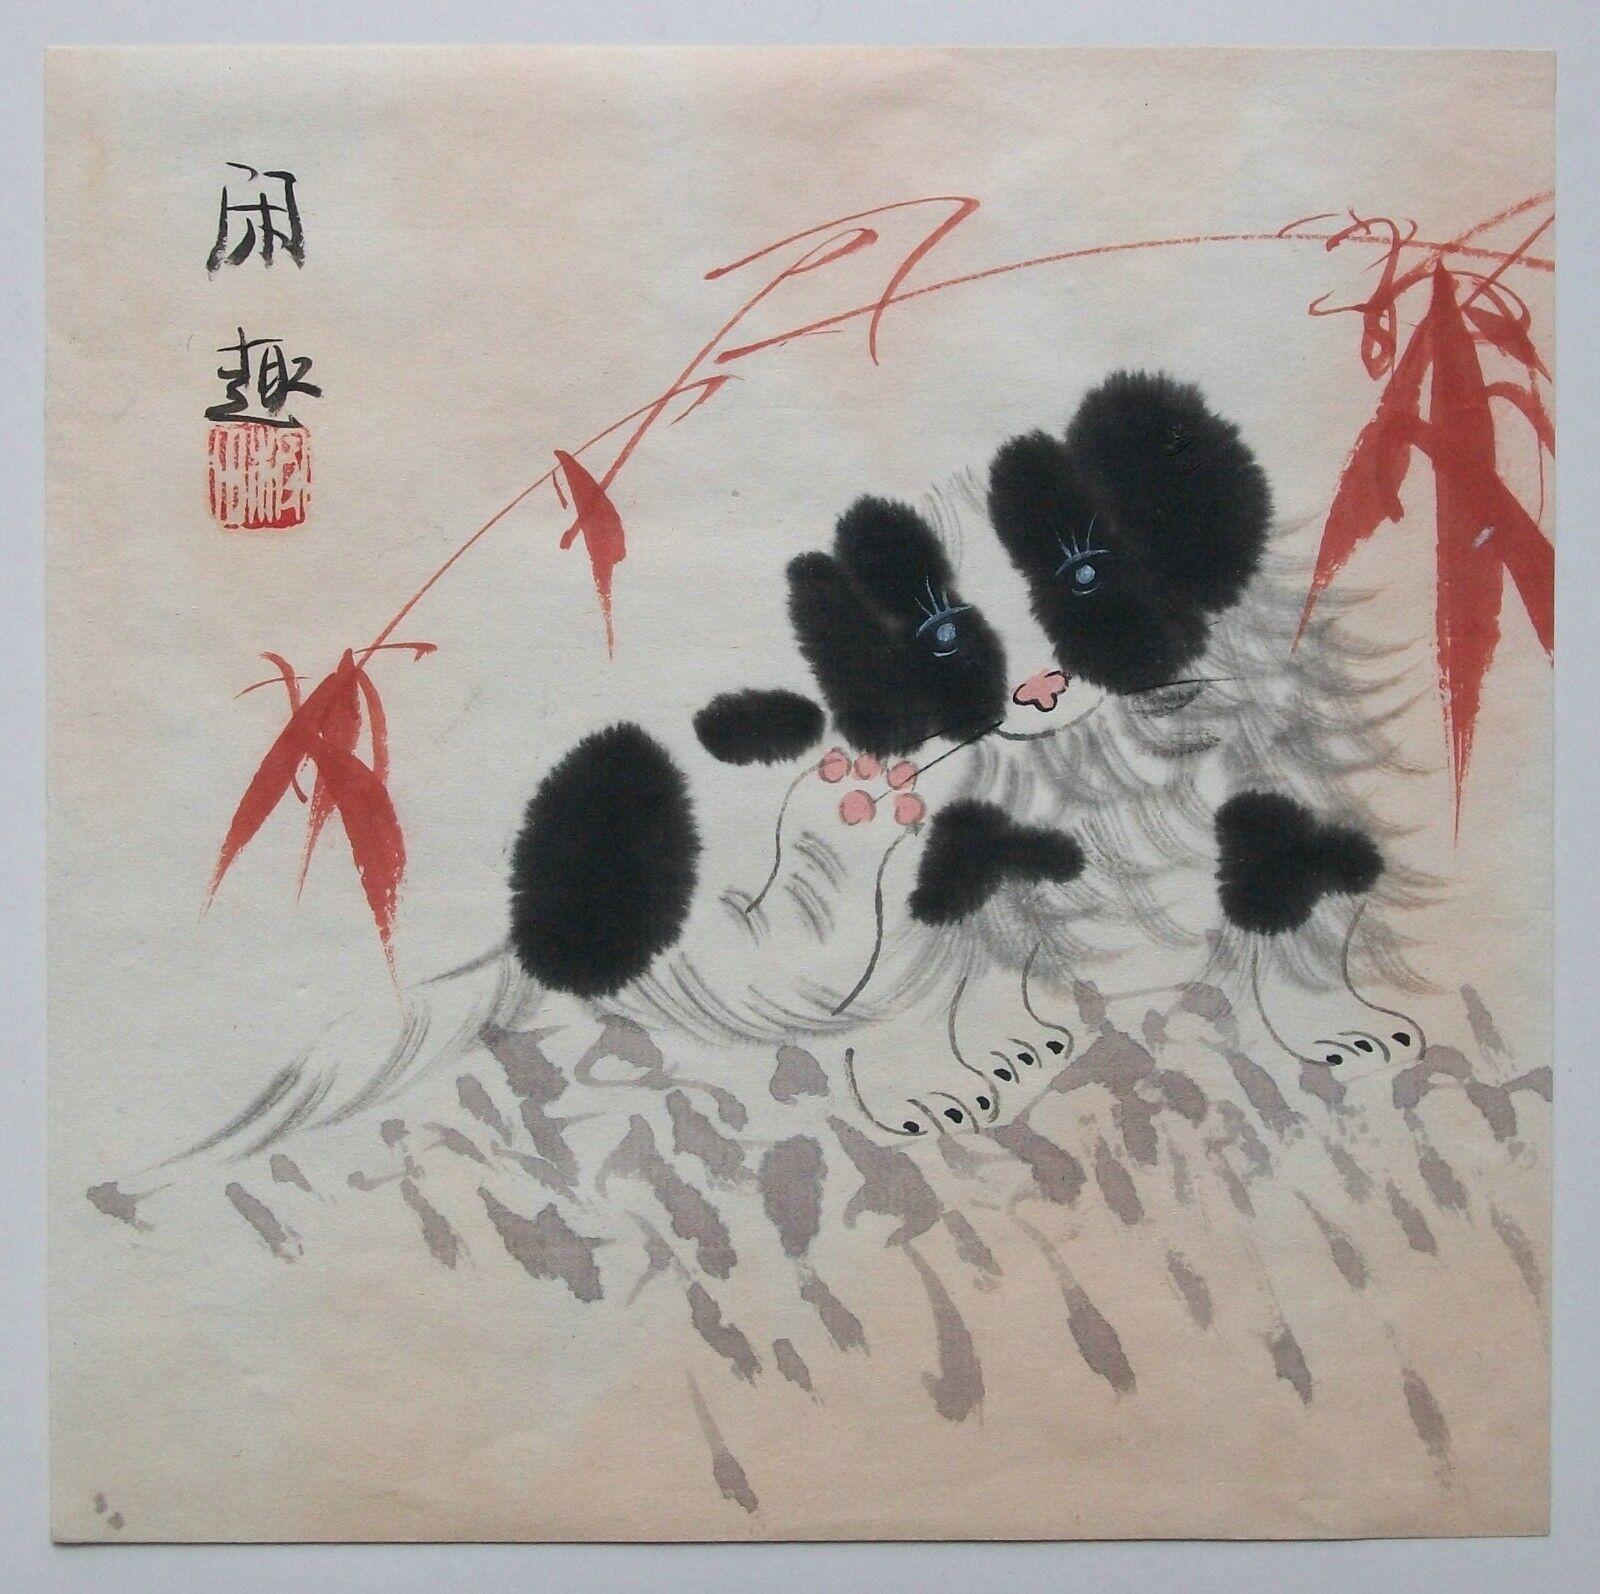 XIANG TIAN - 'Relaxing' - Vintage Aquarell auf Papier - schöne Qualität und Komposition - signiert mit einem einzelnen roten Häckselzeichen und chinesischen Schriftzeichen (oben links) - signiert und betitelt verso - auf Karton montiert (nur obere